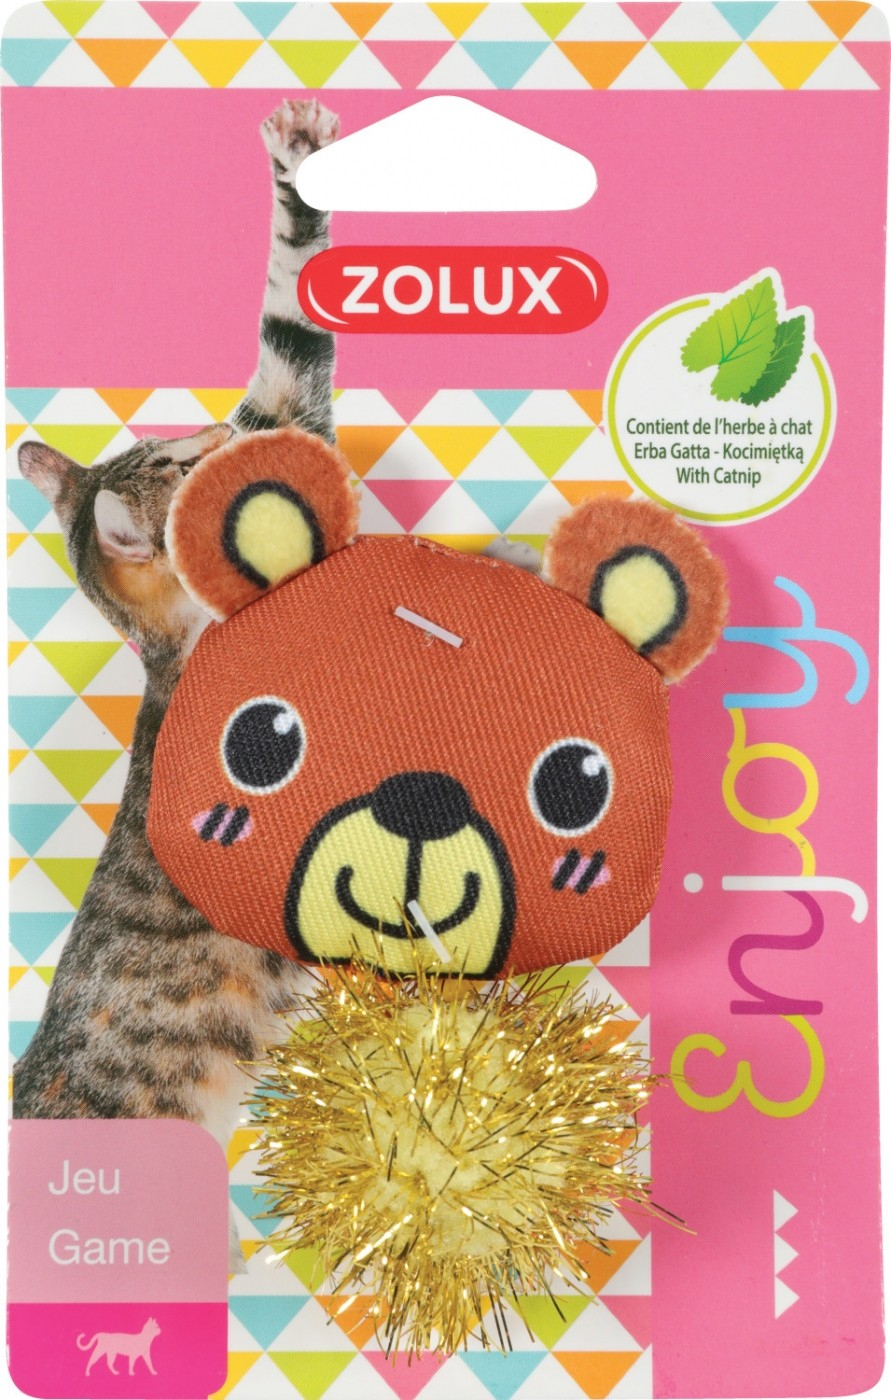 Zolux giocattolo per gatto con erba gatta - Orsacchiotto